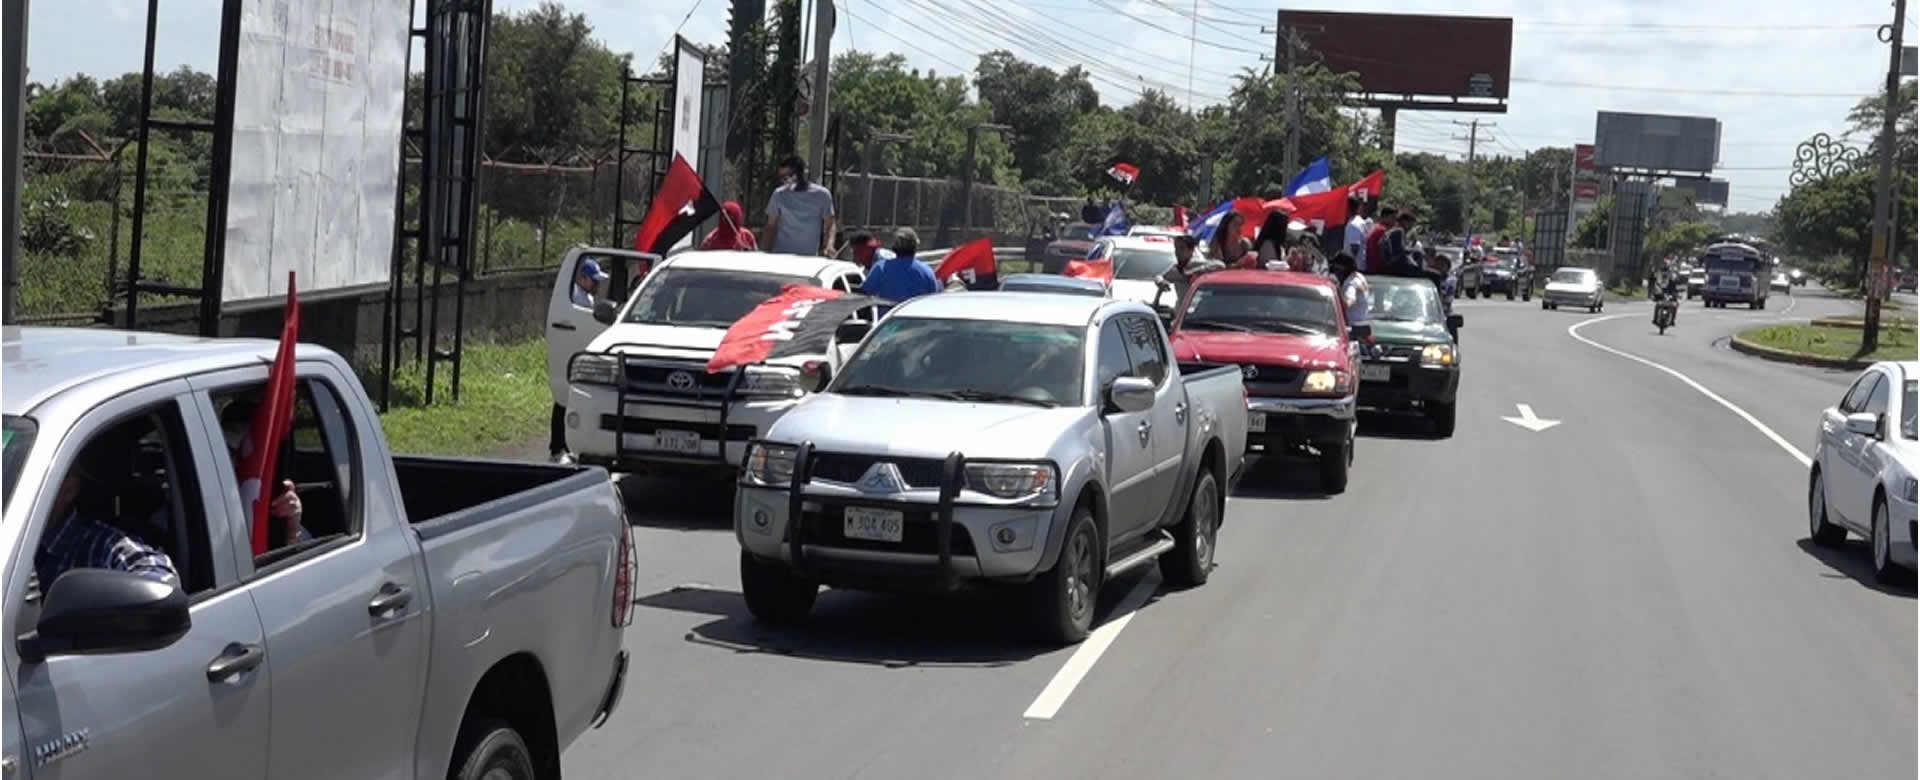 Con una enorme caravana la militancia Sandinista clama por la paz y la justicia para el país